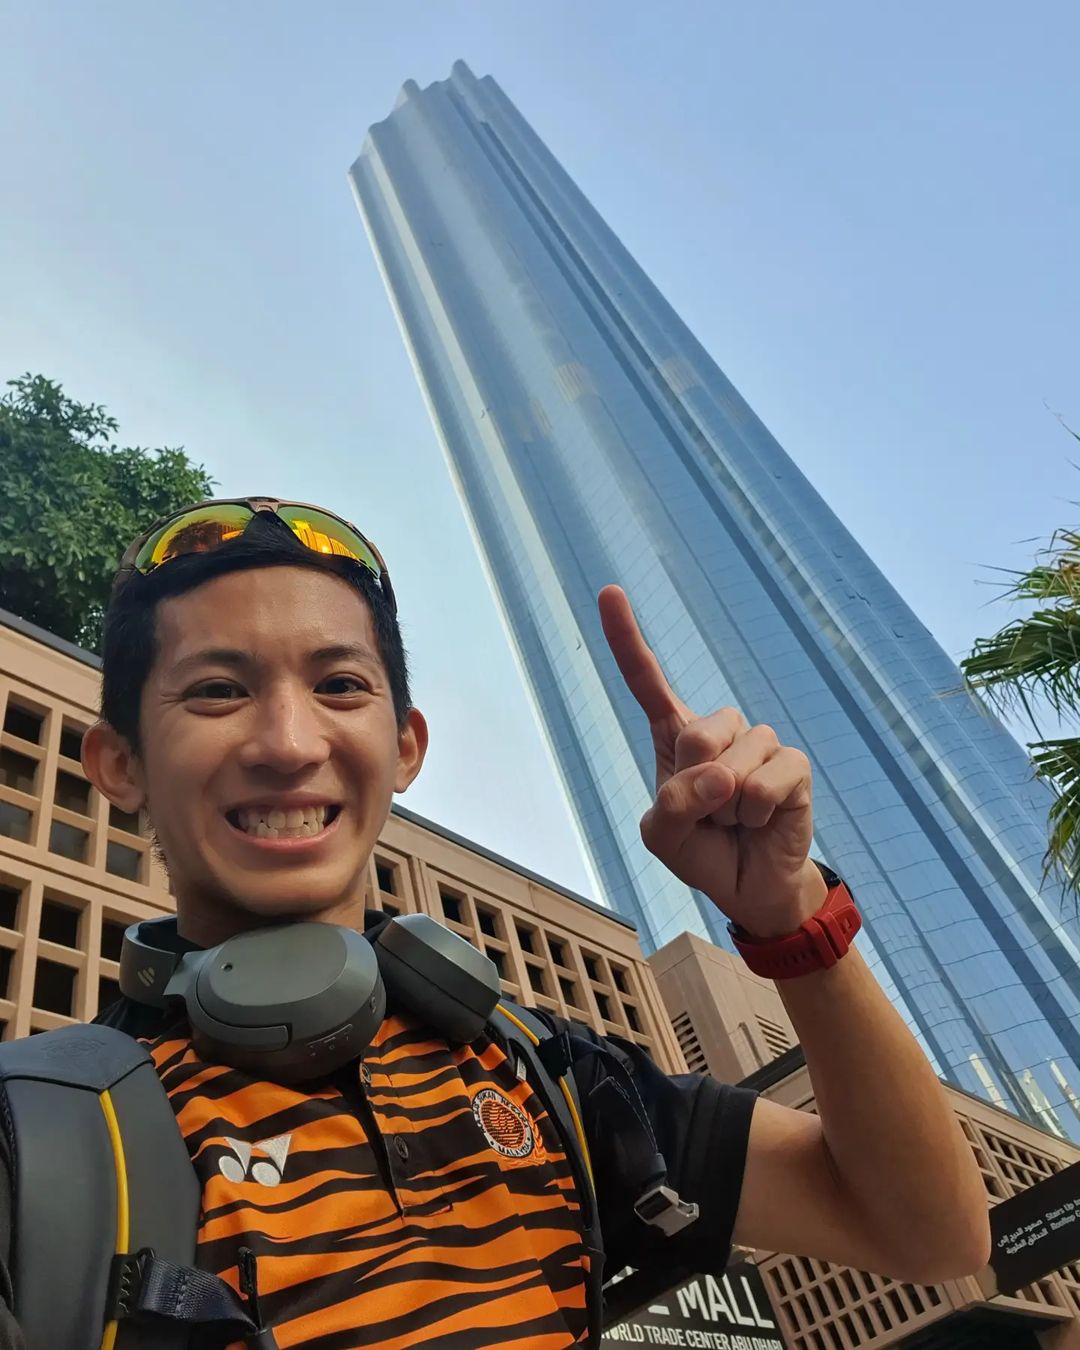 Tower runner Soh Wai Ching